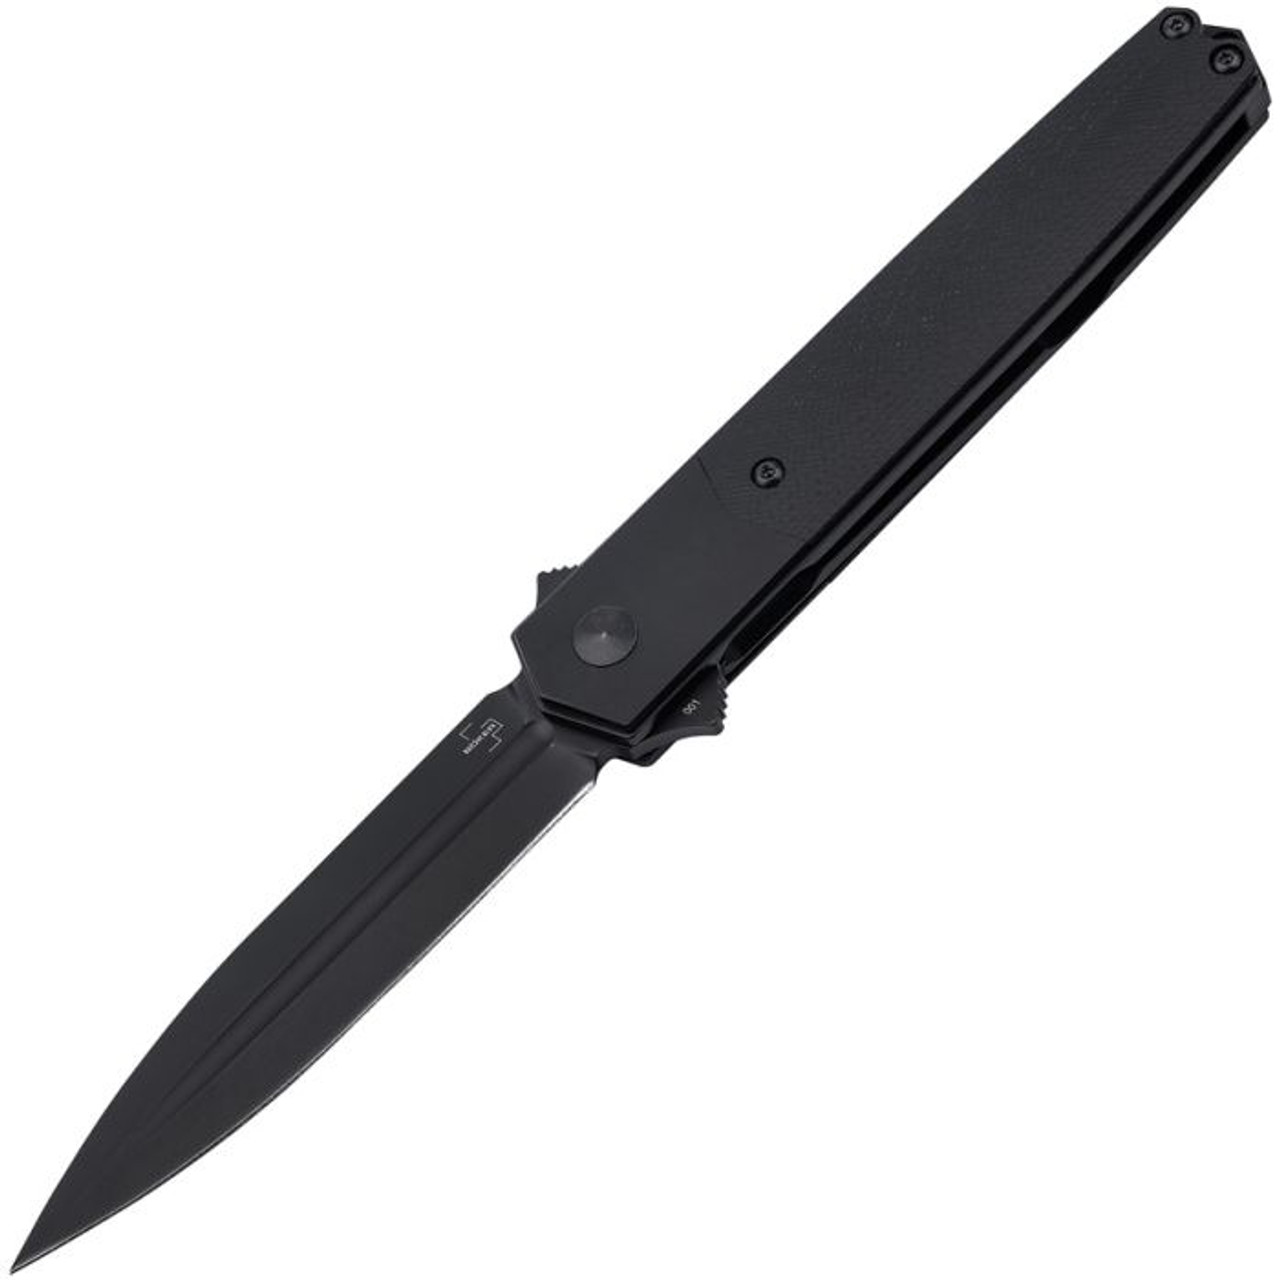 Boker Plus Kwaiken Sym (01BO635) 3.58" 154CM Black Coated Dagger Plain Blade, Black G-10 Handle with Titanium Bolsters